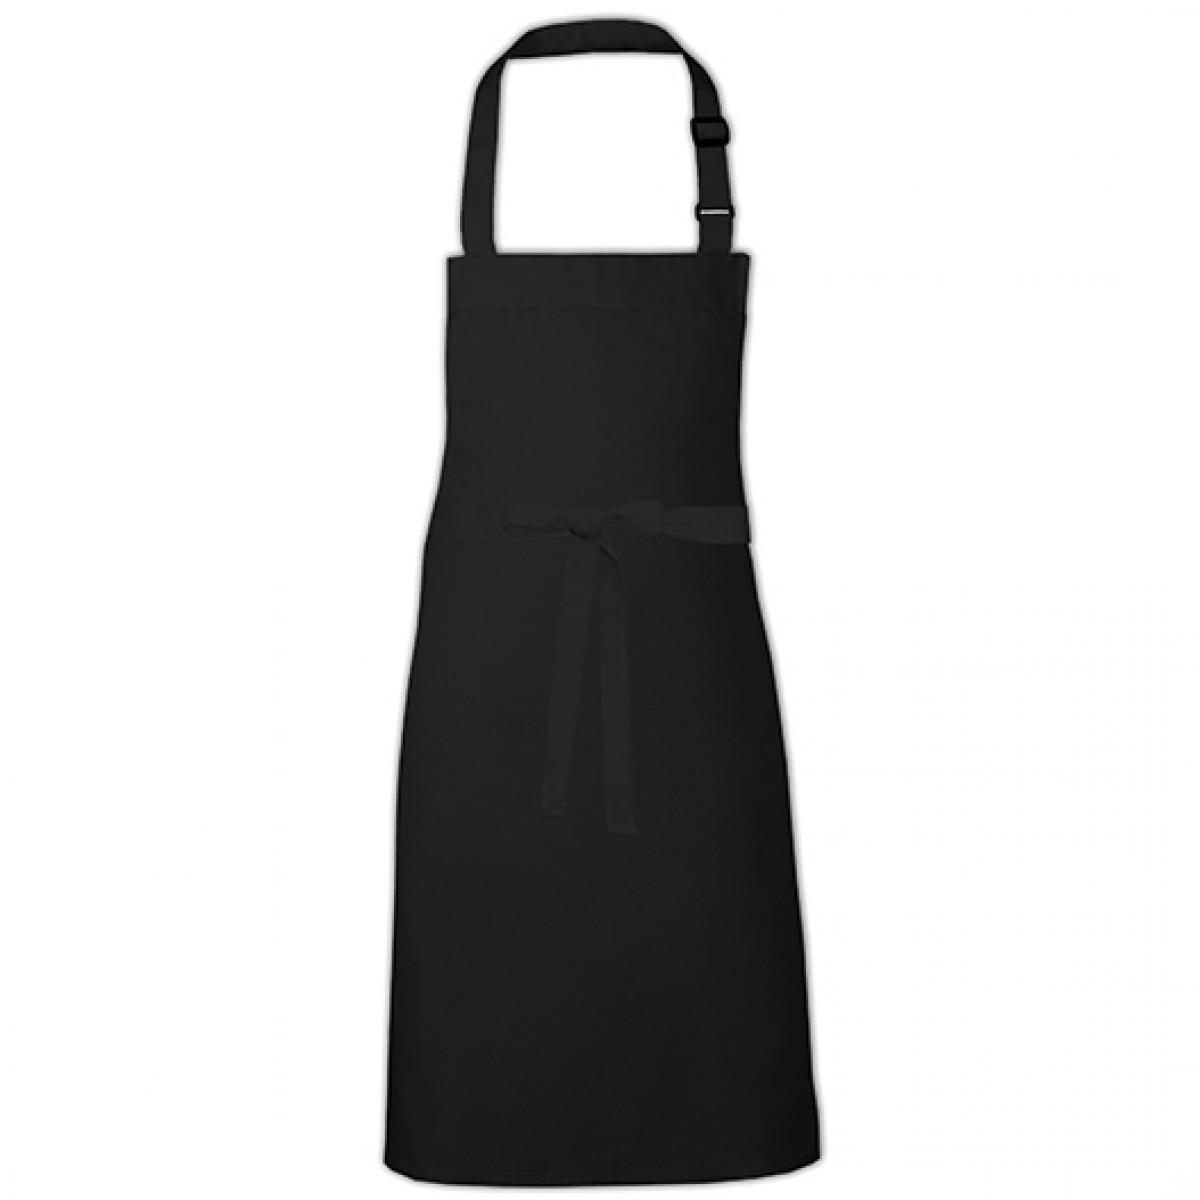 Hersteller: Link Kitchen Wear Herstellernummer: BBQ9073ADJ Artikelbezeichnung: Barbecue Apron adjustable 73 x 90 cm -  Waschbar bis 60 °C Farbe: Black